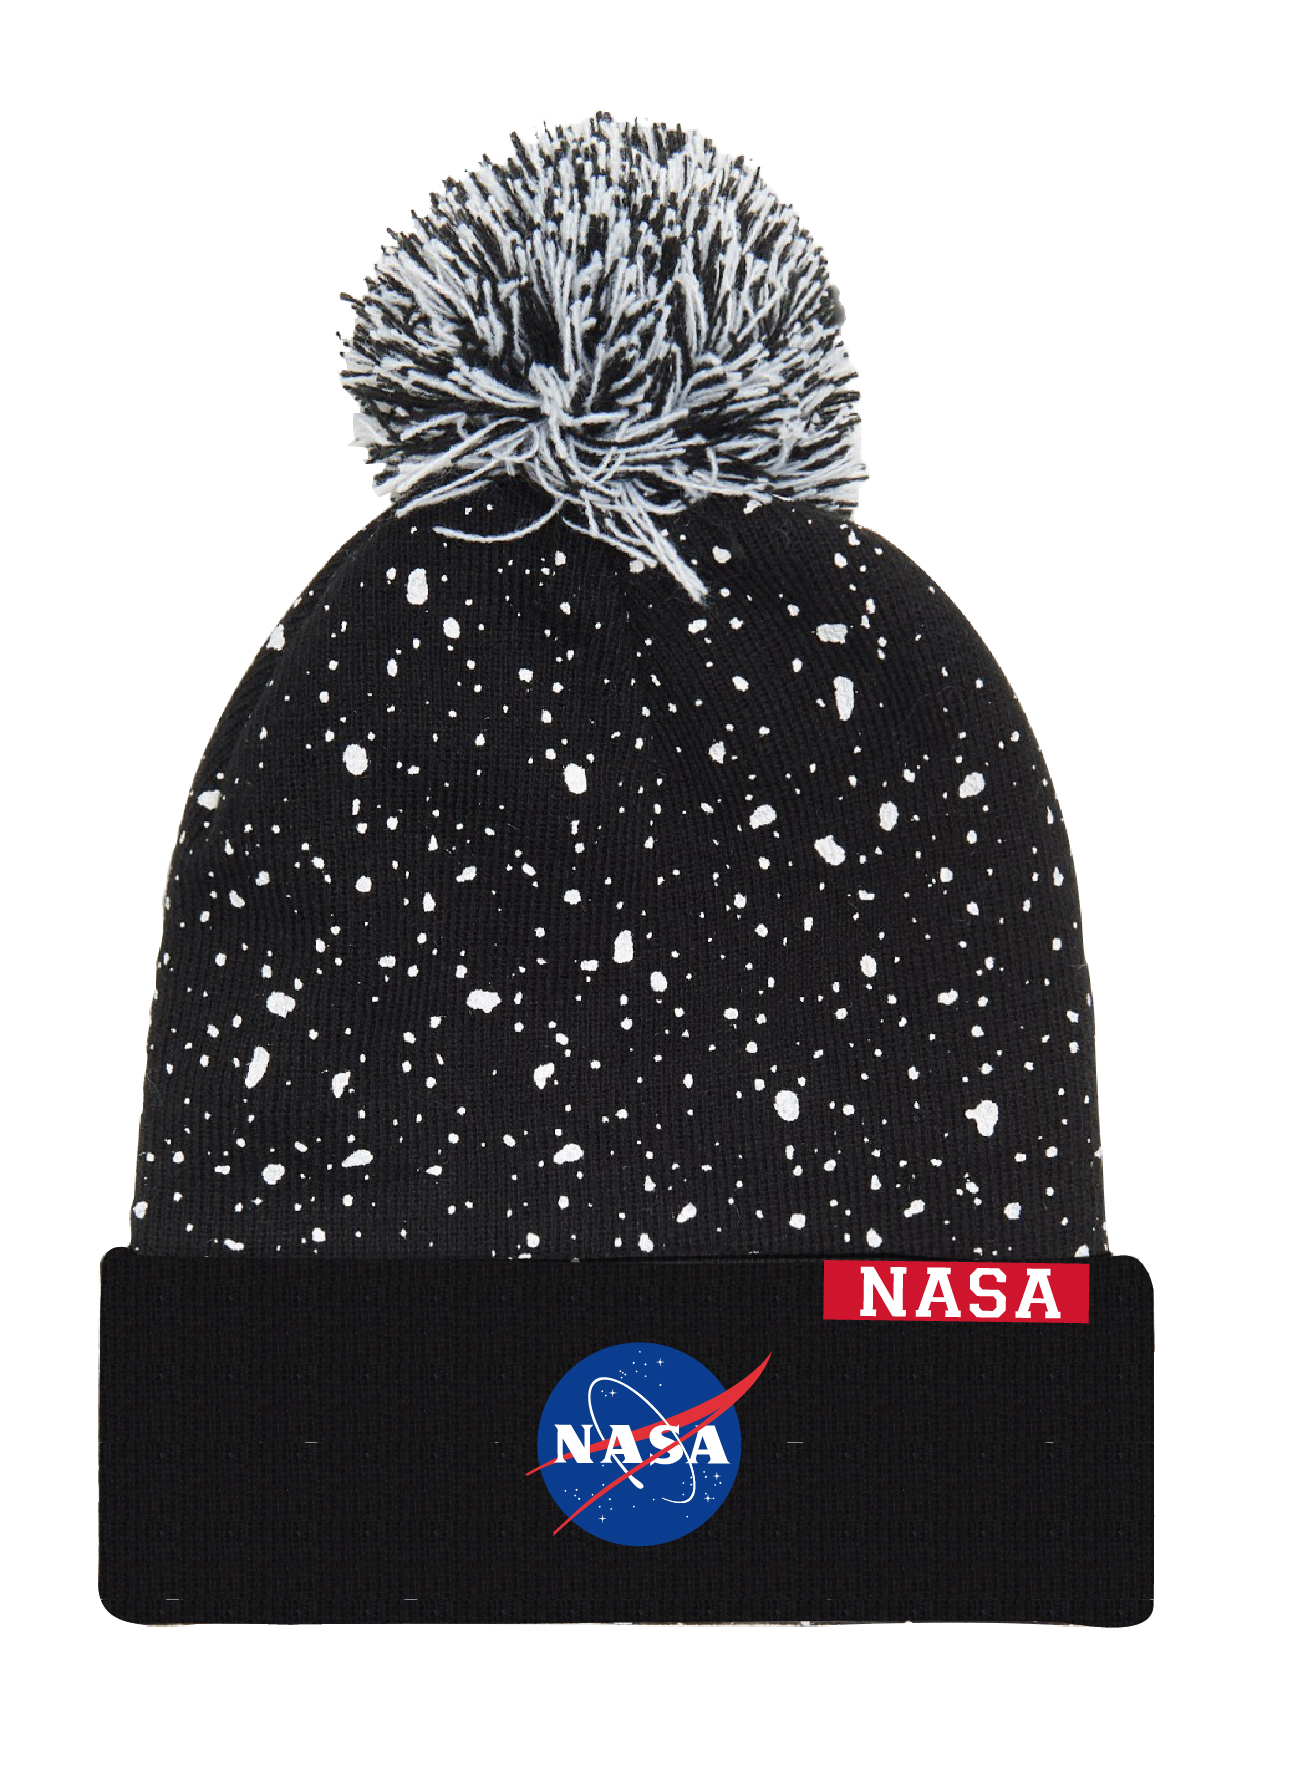 Nasa - licence Chlapecká čepice - NASA 5239178, černá Barva: Černá, Velikost: velikost 56